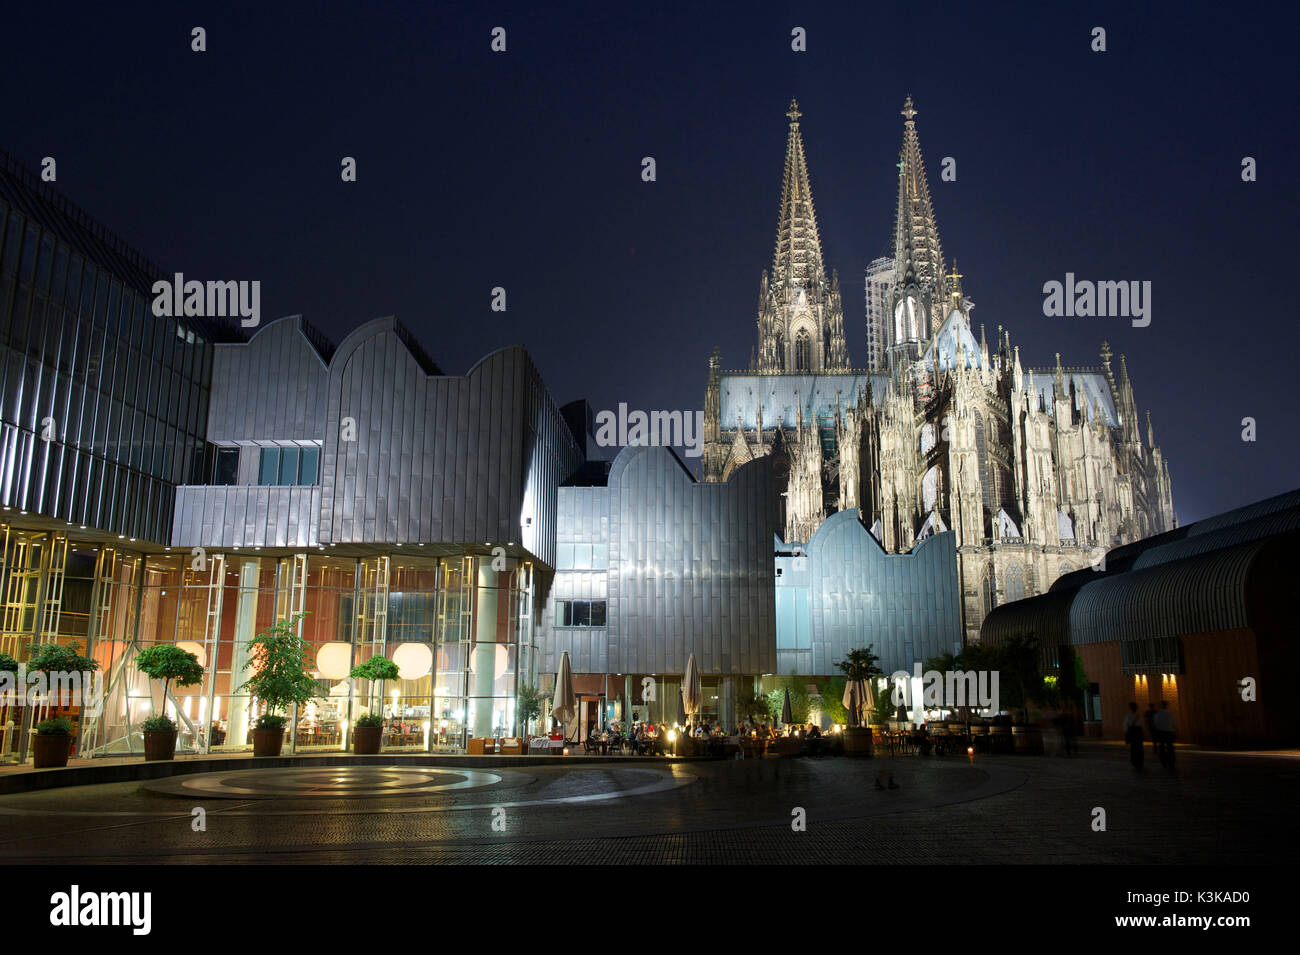 In Germania, in Renania settentrionale-Vestfalia, Colonia (Köln), il Museo Ludwig e la cattedrale di Colonia sono classificati come patrimonio mondiale dall' UNESCO Foto Stock